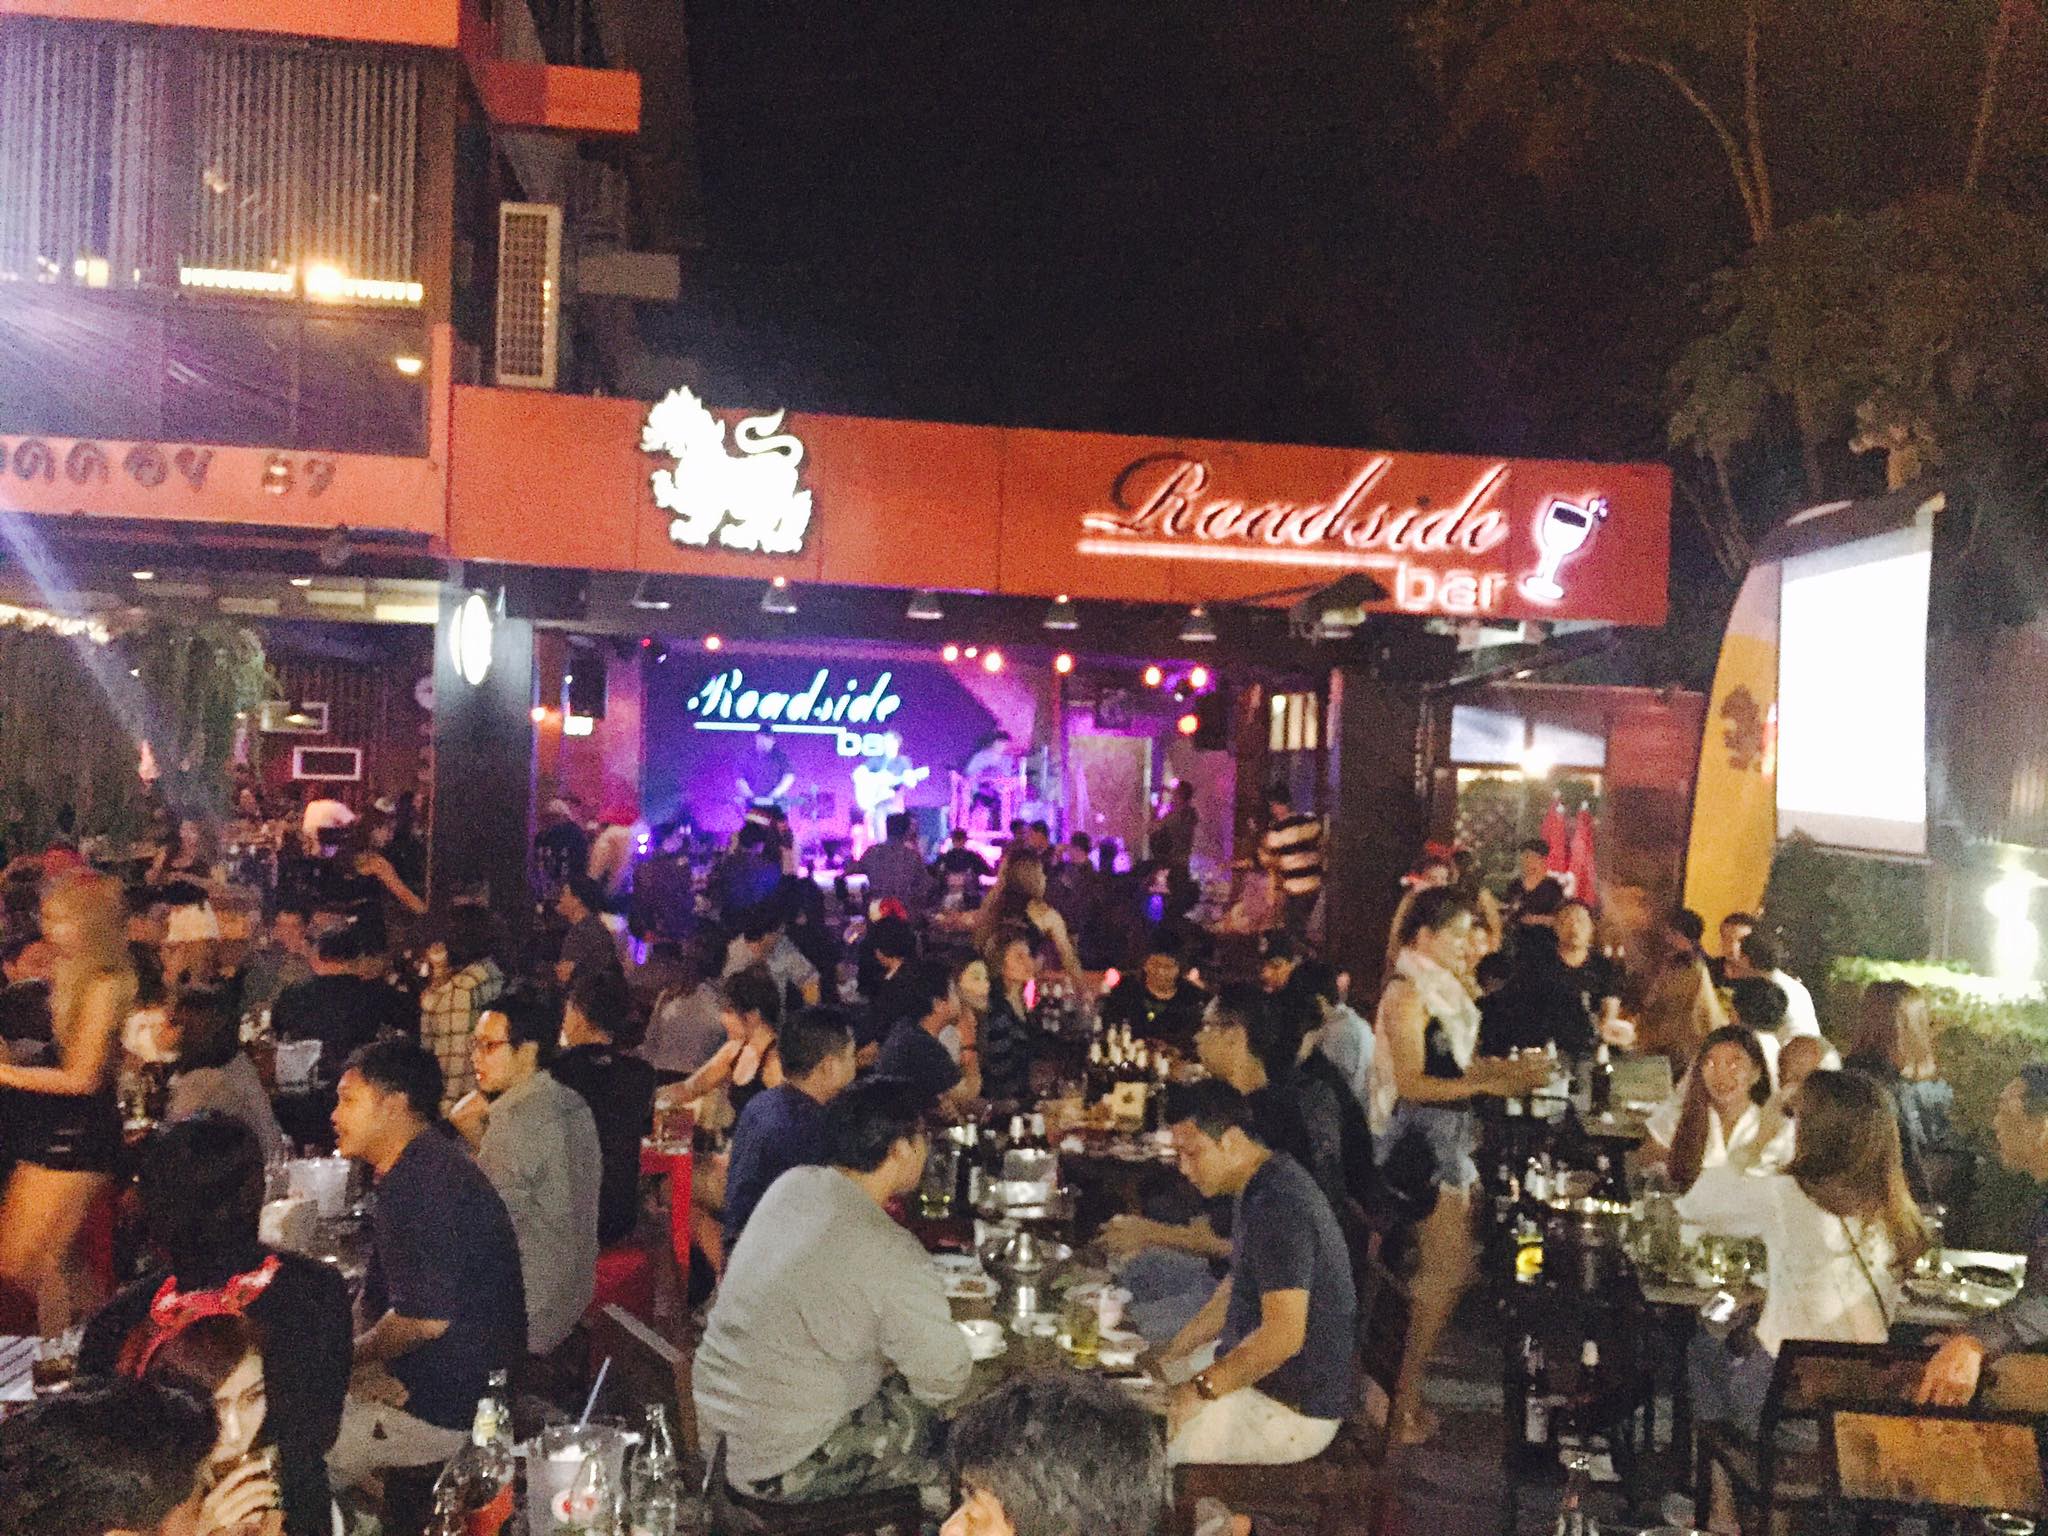 โรดไซด์บาร์ เชียงใหม่ (Road Side Bar Chiang Mai) : เชียงใหม่ (Chiang Mai)